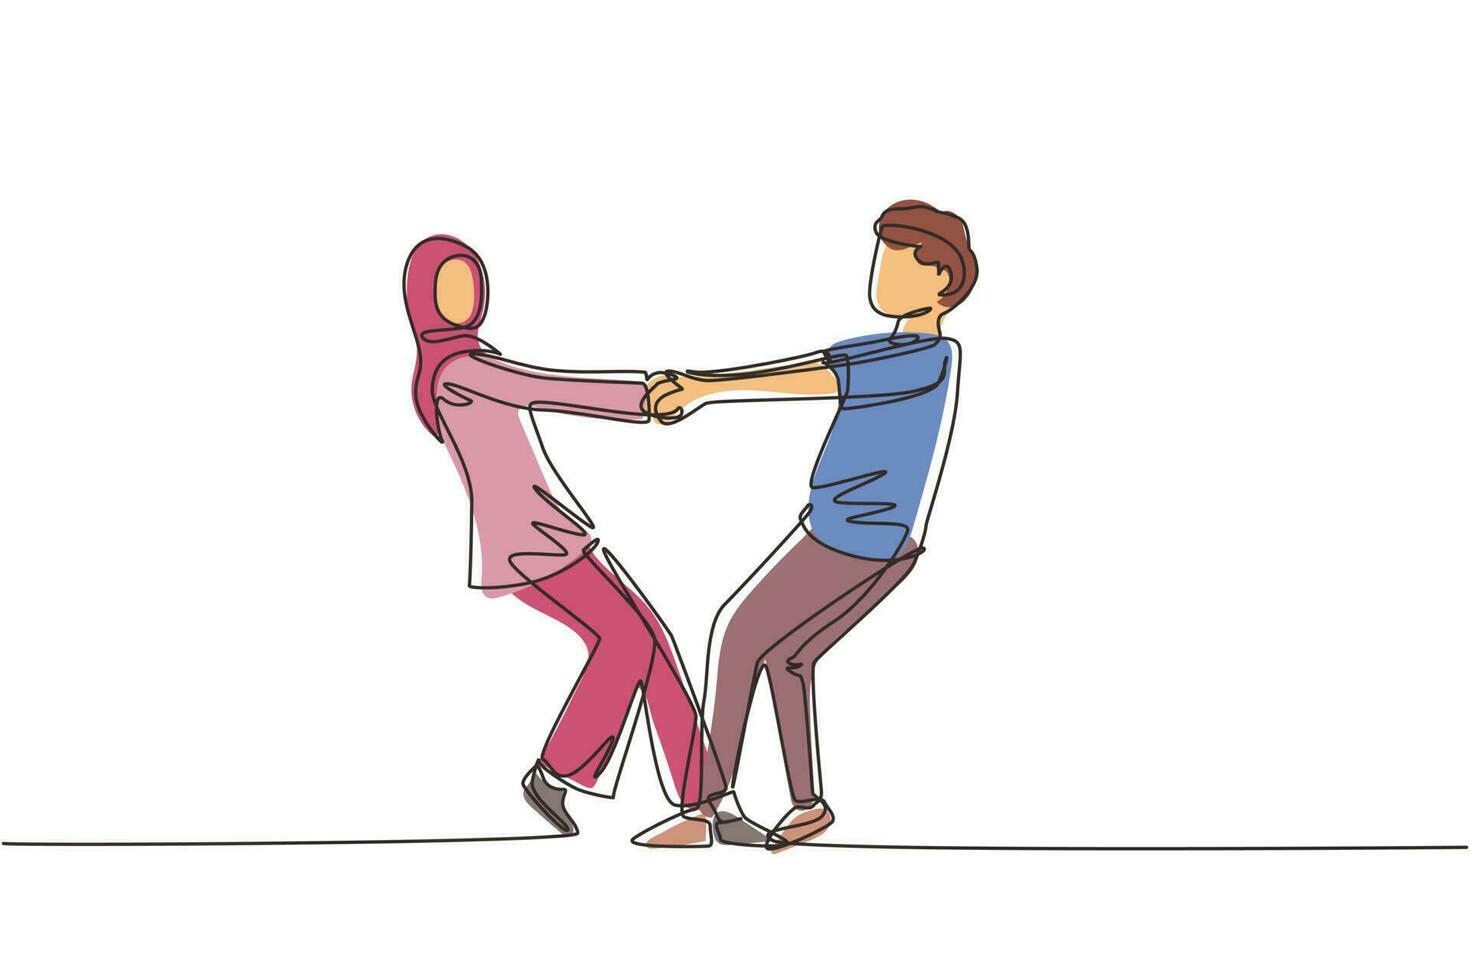 un unico disegno a tratteggio uomo e donna arabi felici che ballano sul pavimento al parco. giovani sposi romantici che si tengono per mano e girano intorno. illustrazione vettoriale grafica di disegno a linea continua